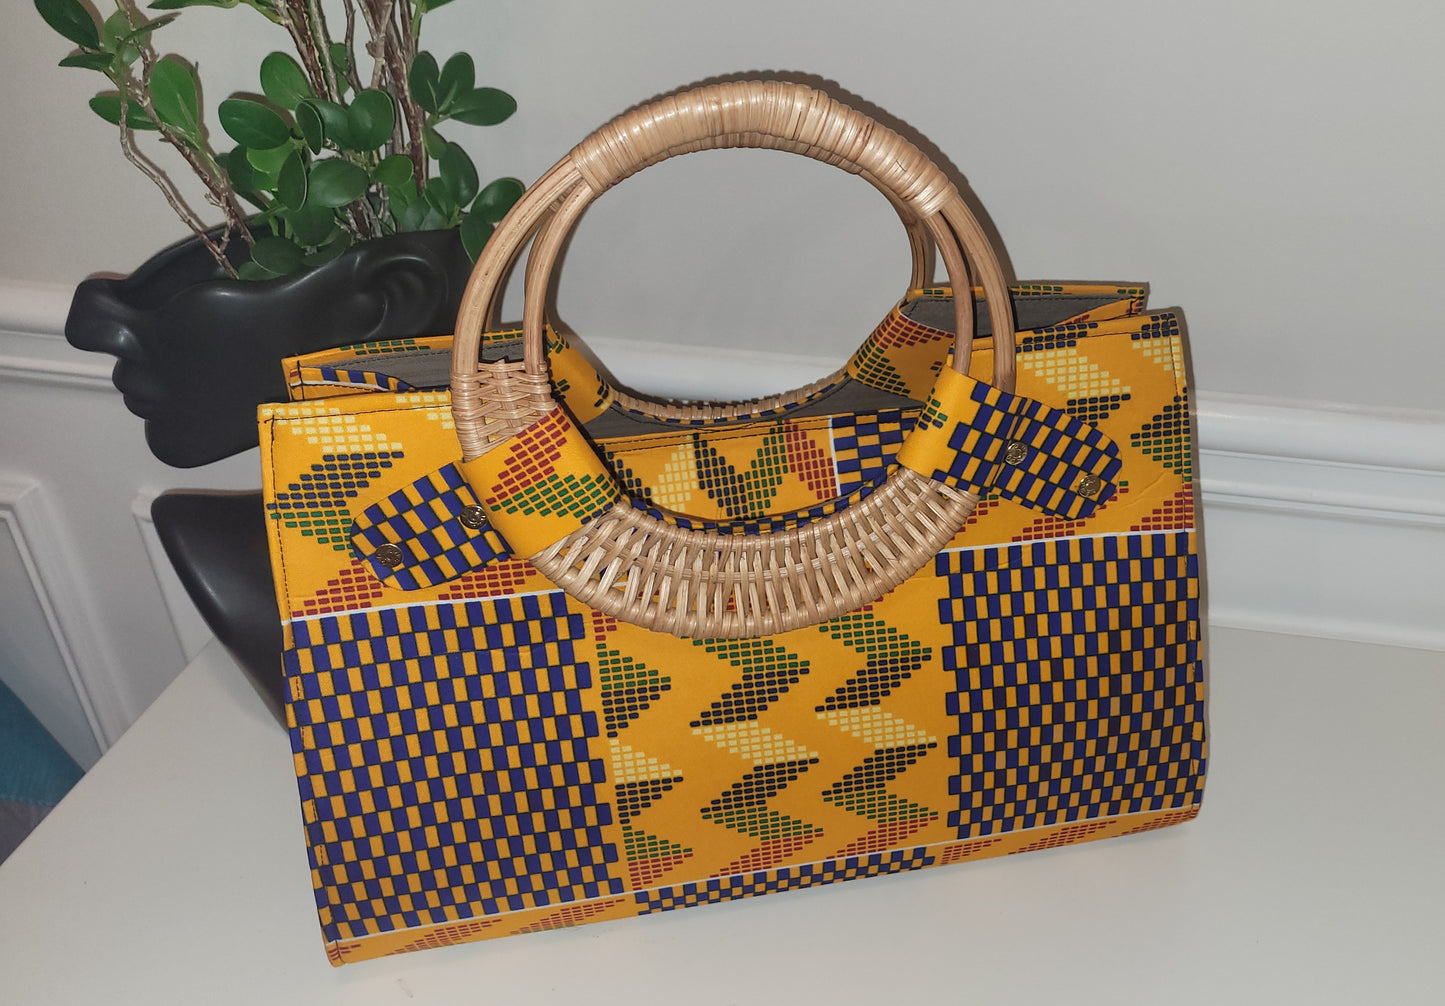 The Chantel - Ghana Handbag Collection